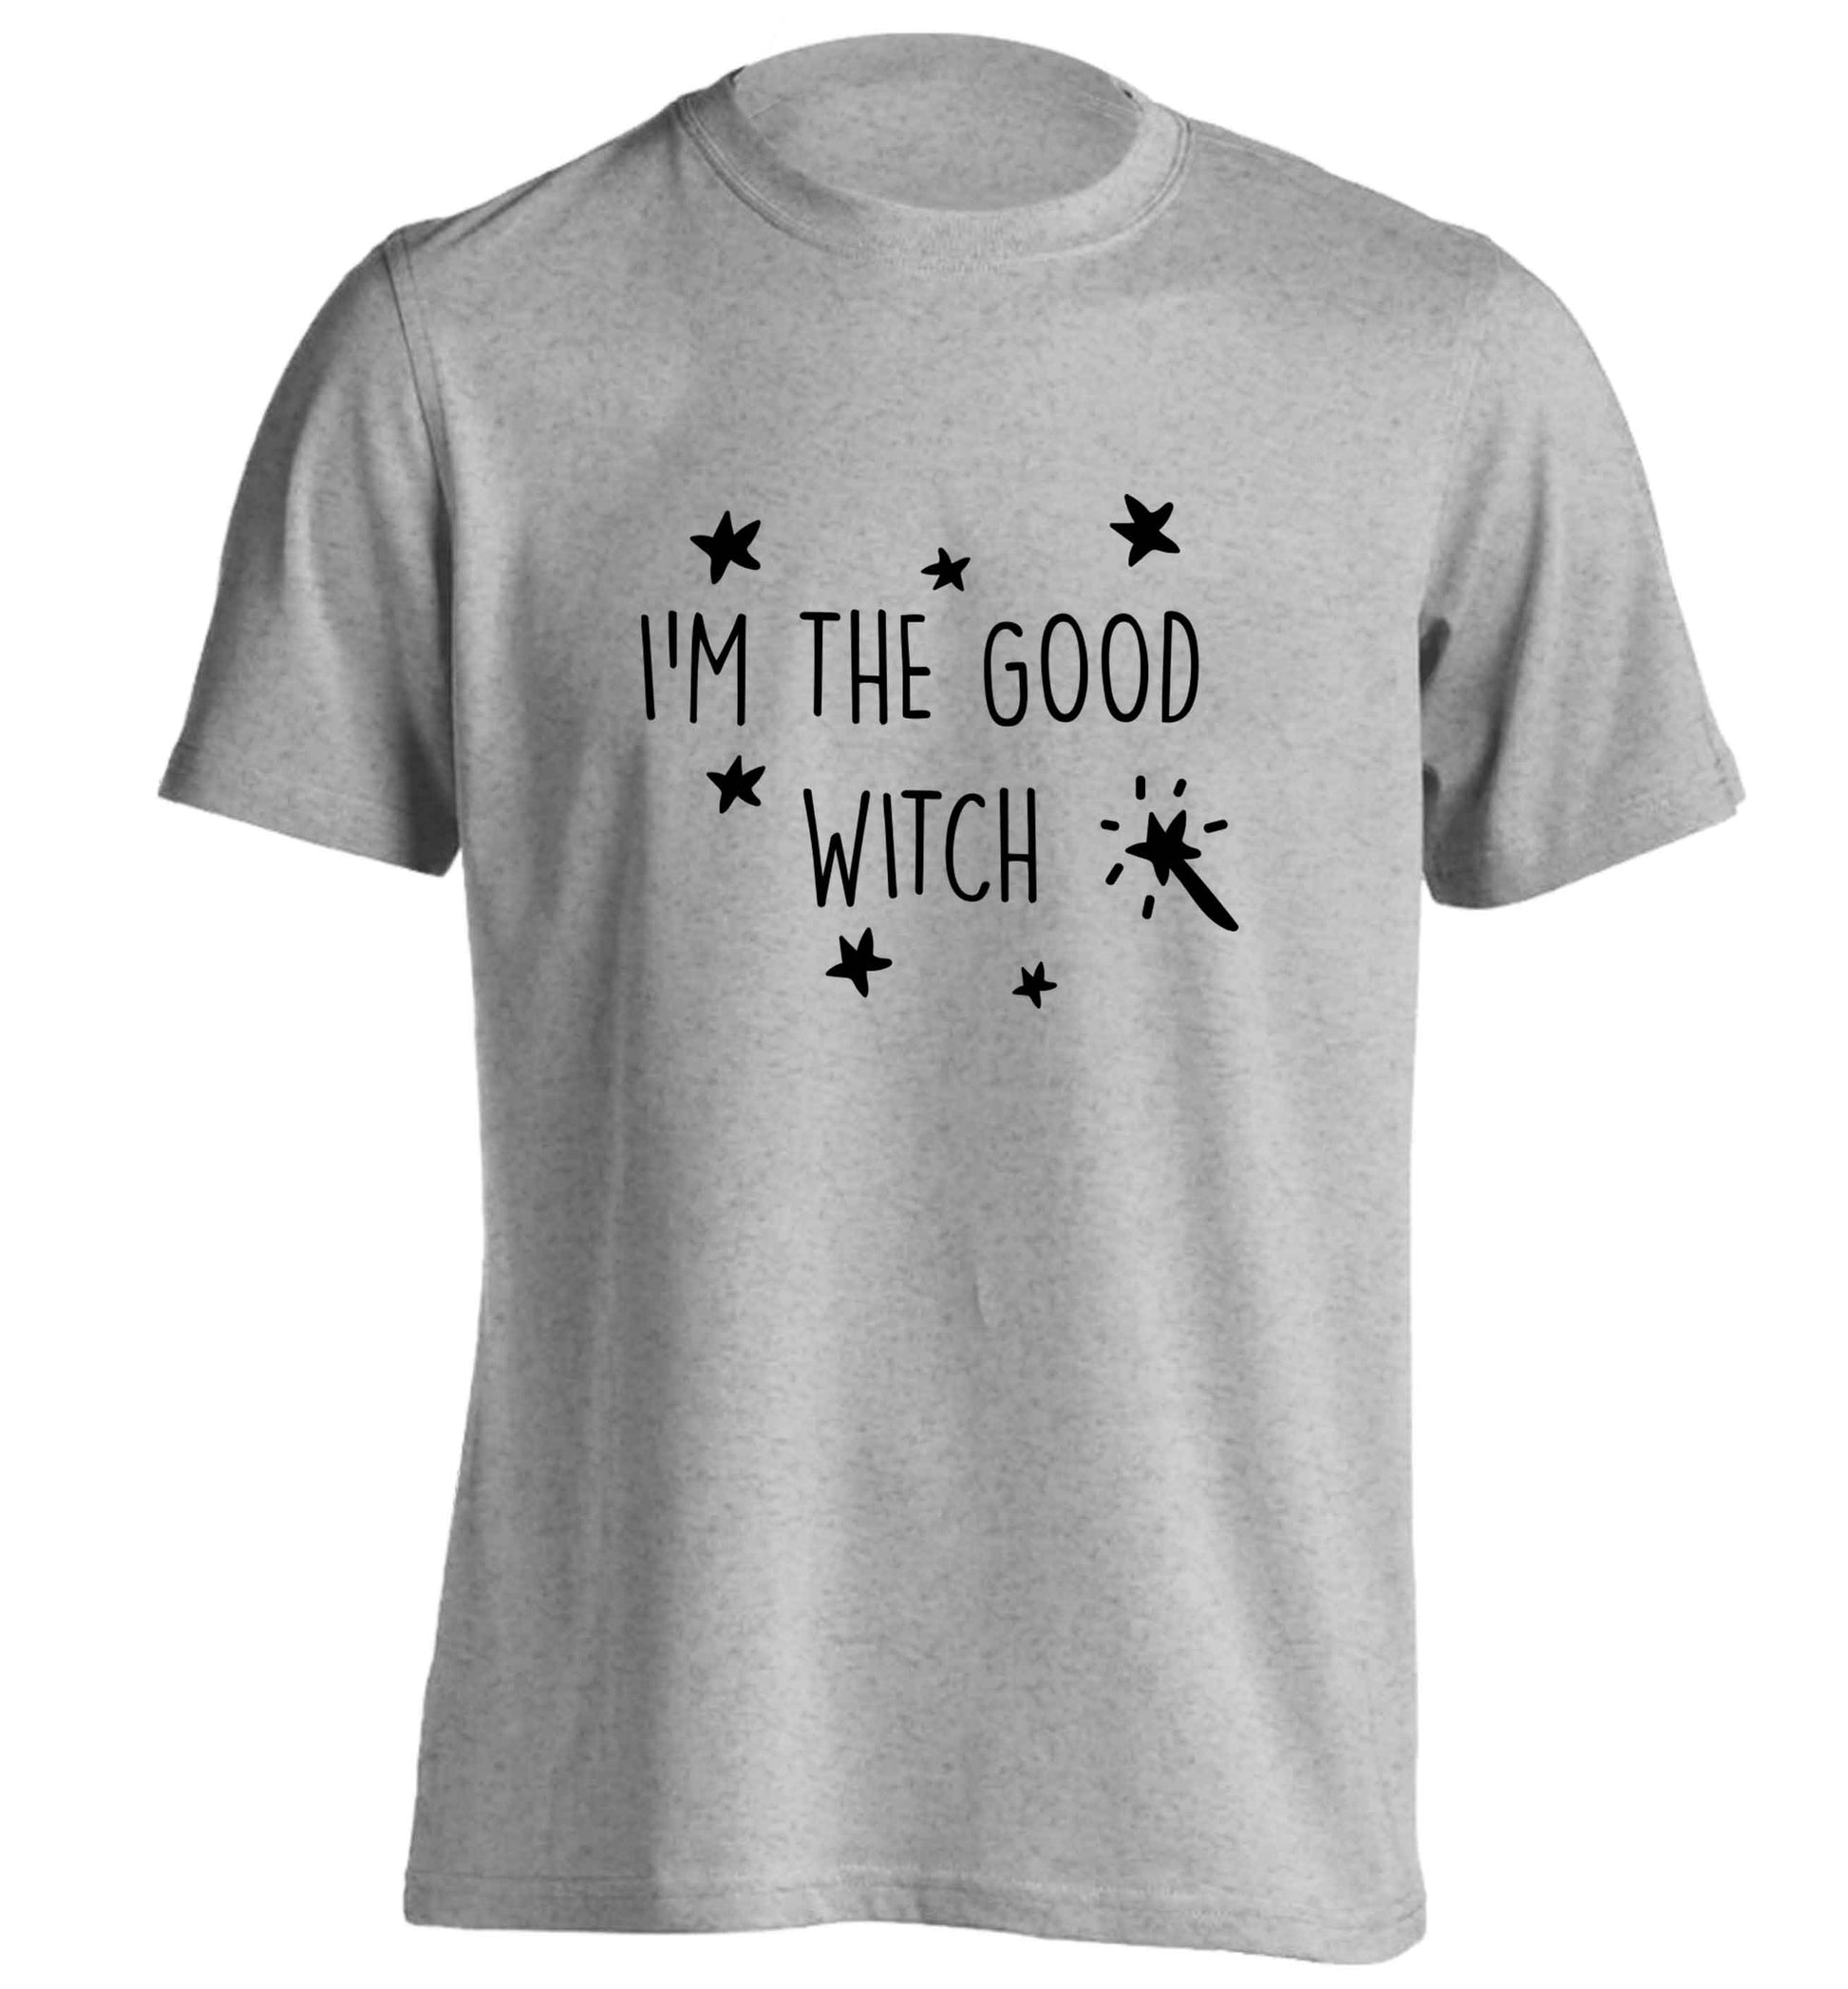 Good witch adults unisex grey Tshirt 2XL